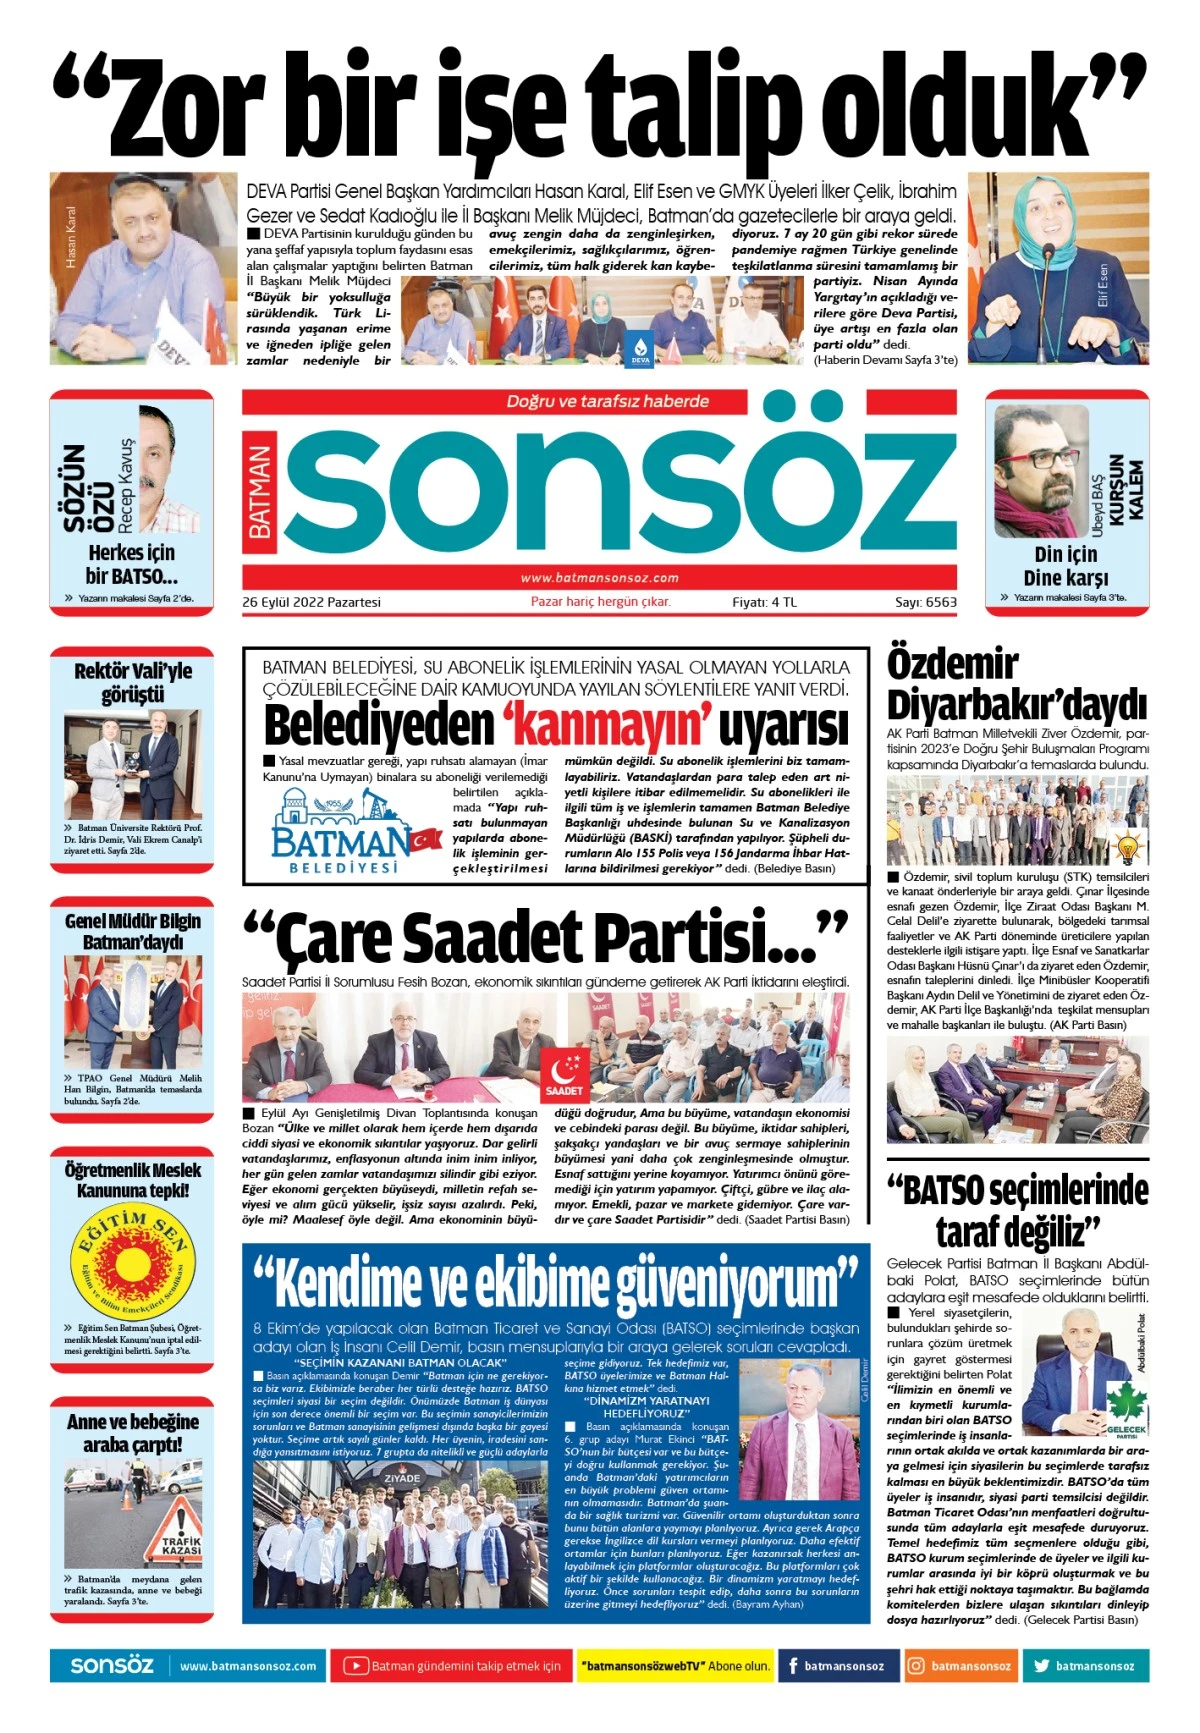 26 Eylül 2022 e-gazete